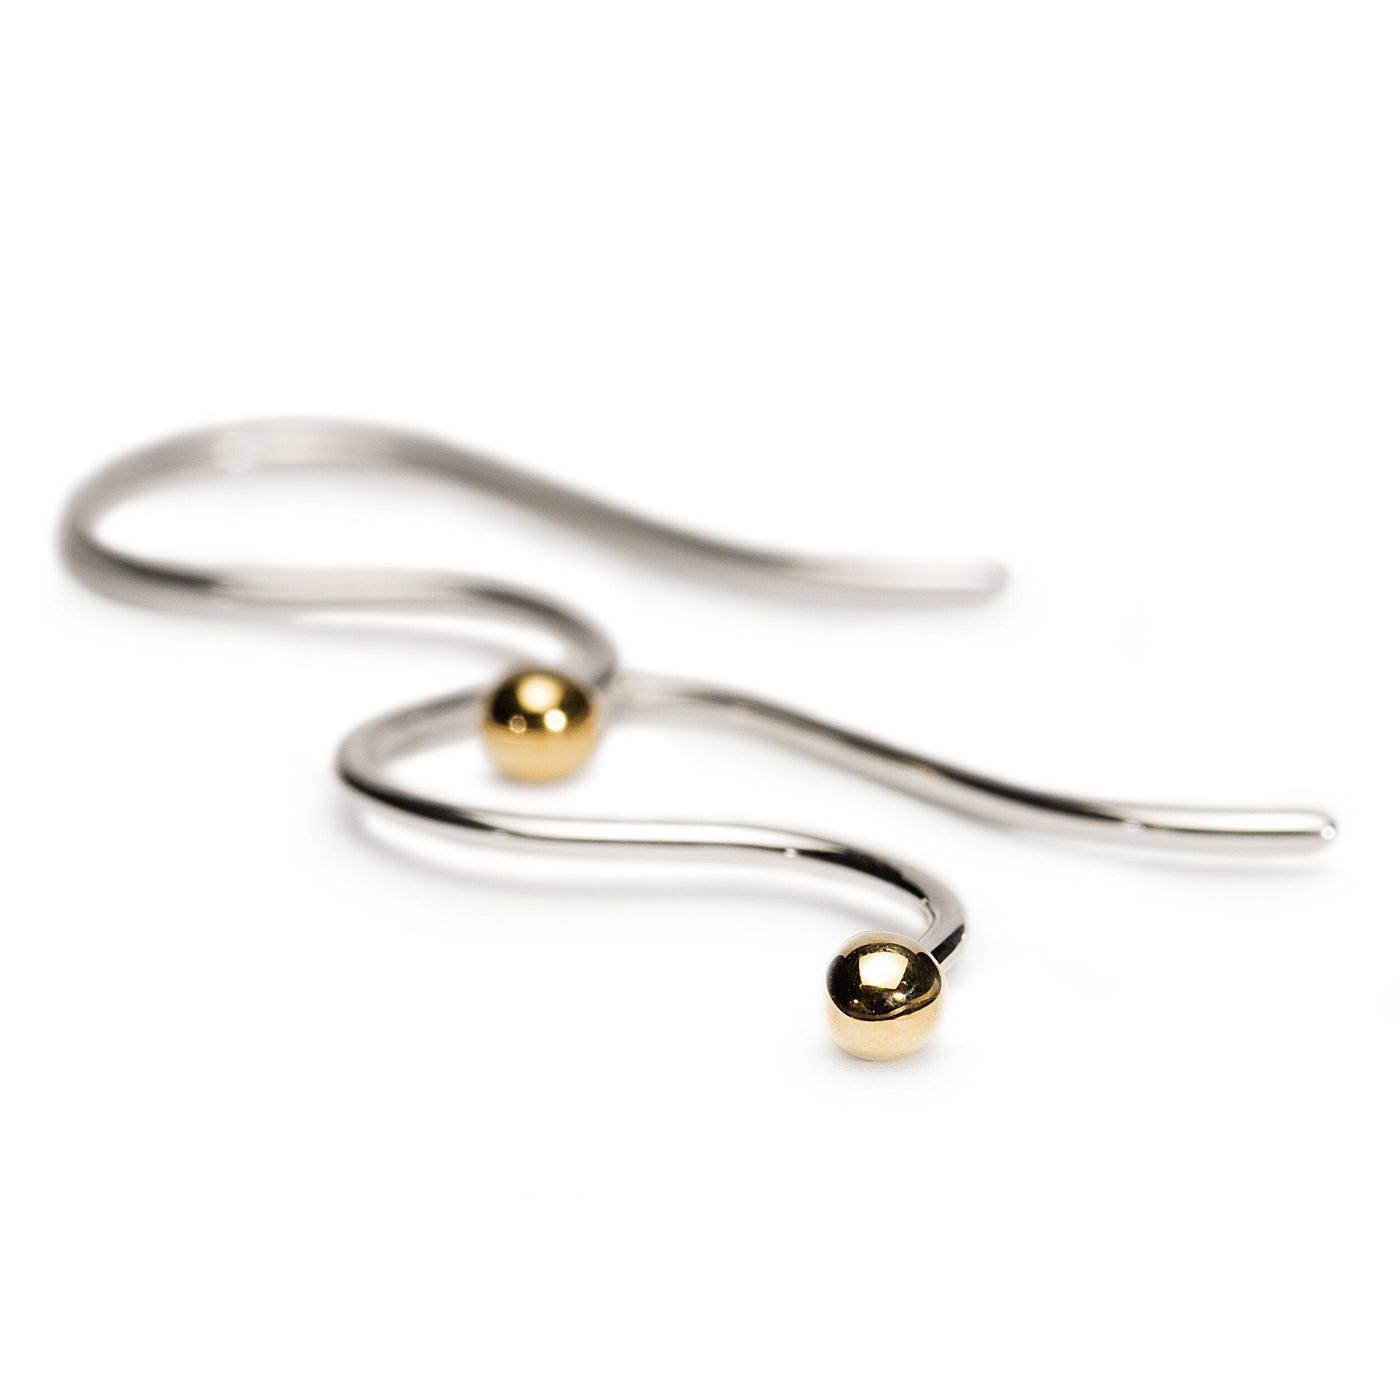 Earring Hooks, Silver/Gold - Trollbeads Canada